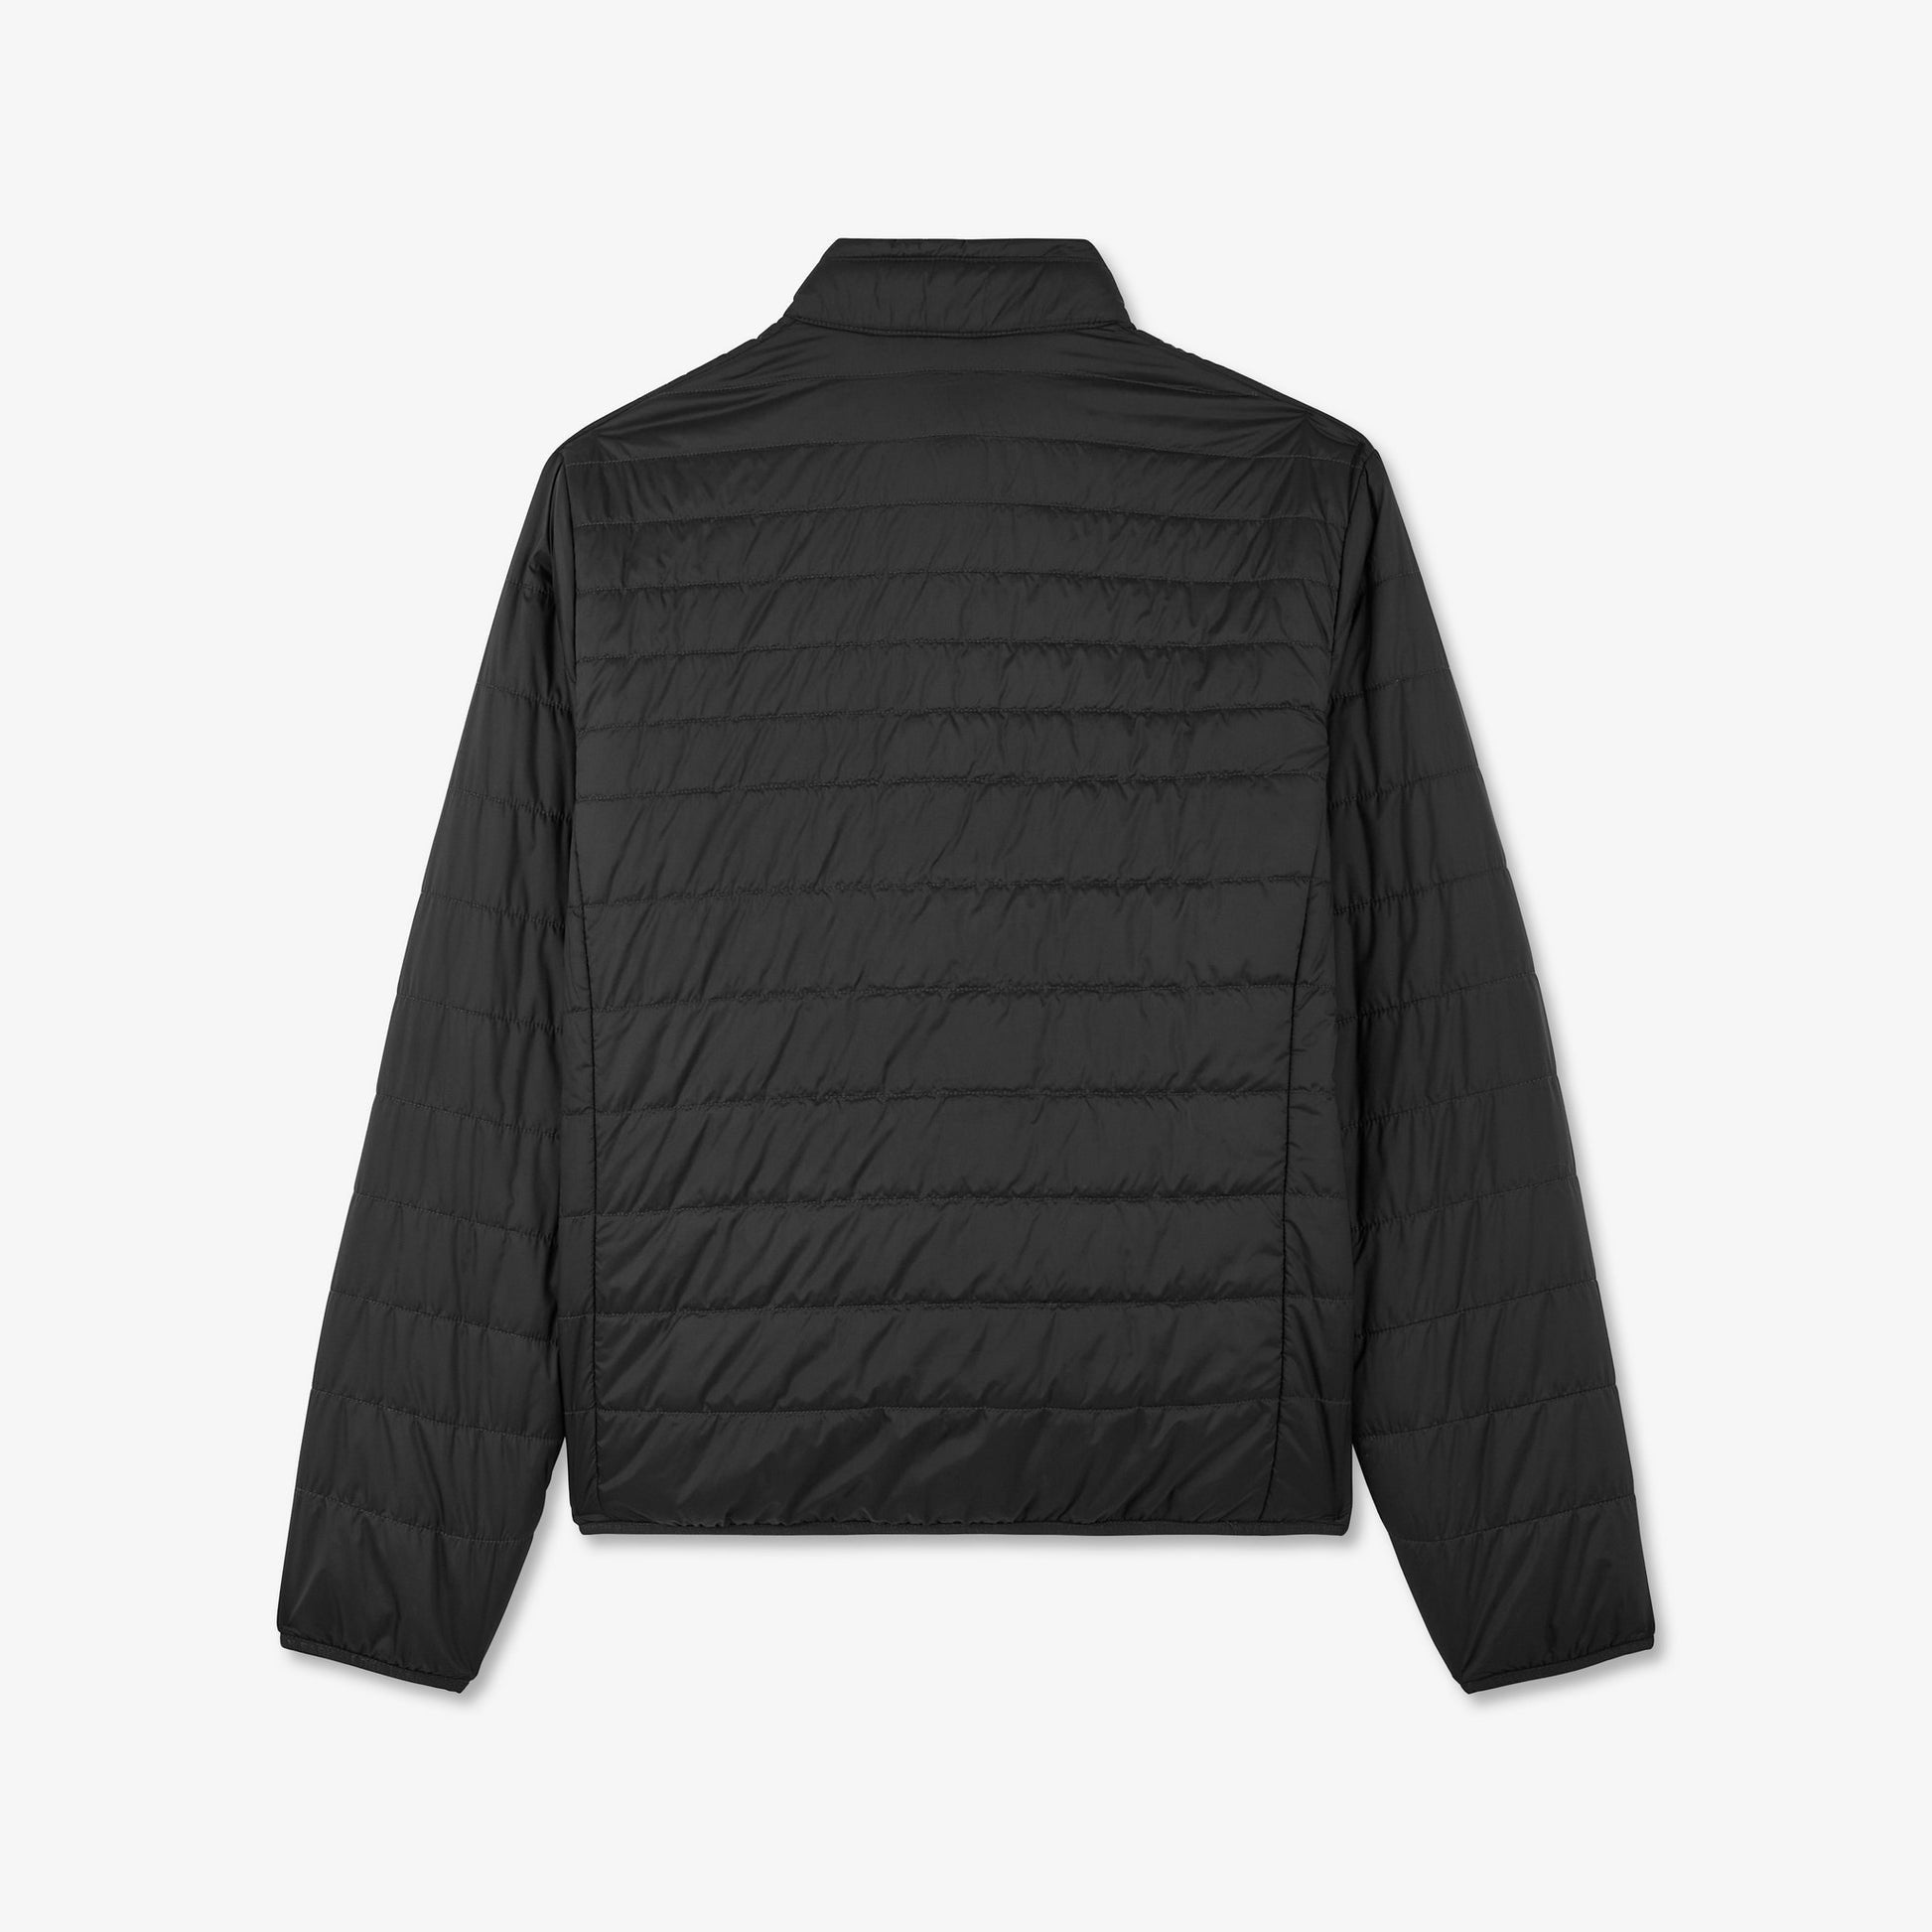 Black Long-Sleeved Puffa Jacket_H23PAMDL0008_NO_05